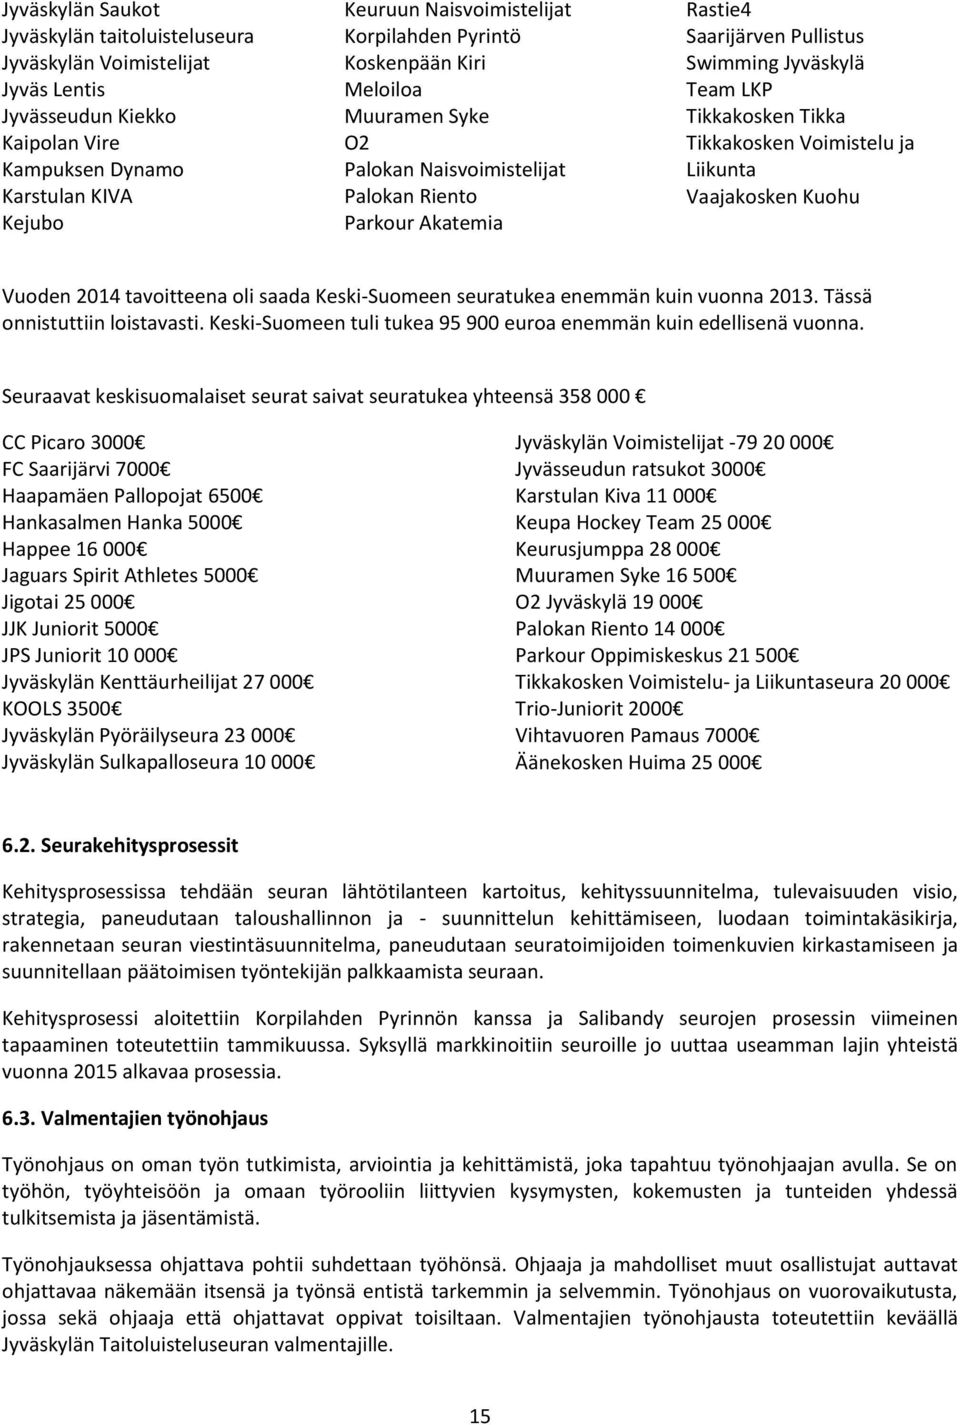 Voimistelu ja Liikunta Vaajakosken Kuohu Vuoden 2014 tavoitteena oli saada Keski-Suomeen seuratukea enemmän kuin vuonna 2013. Tässä onnistuttiin loistavasti.